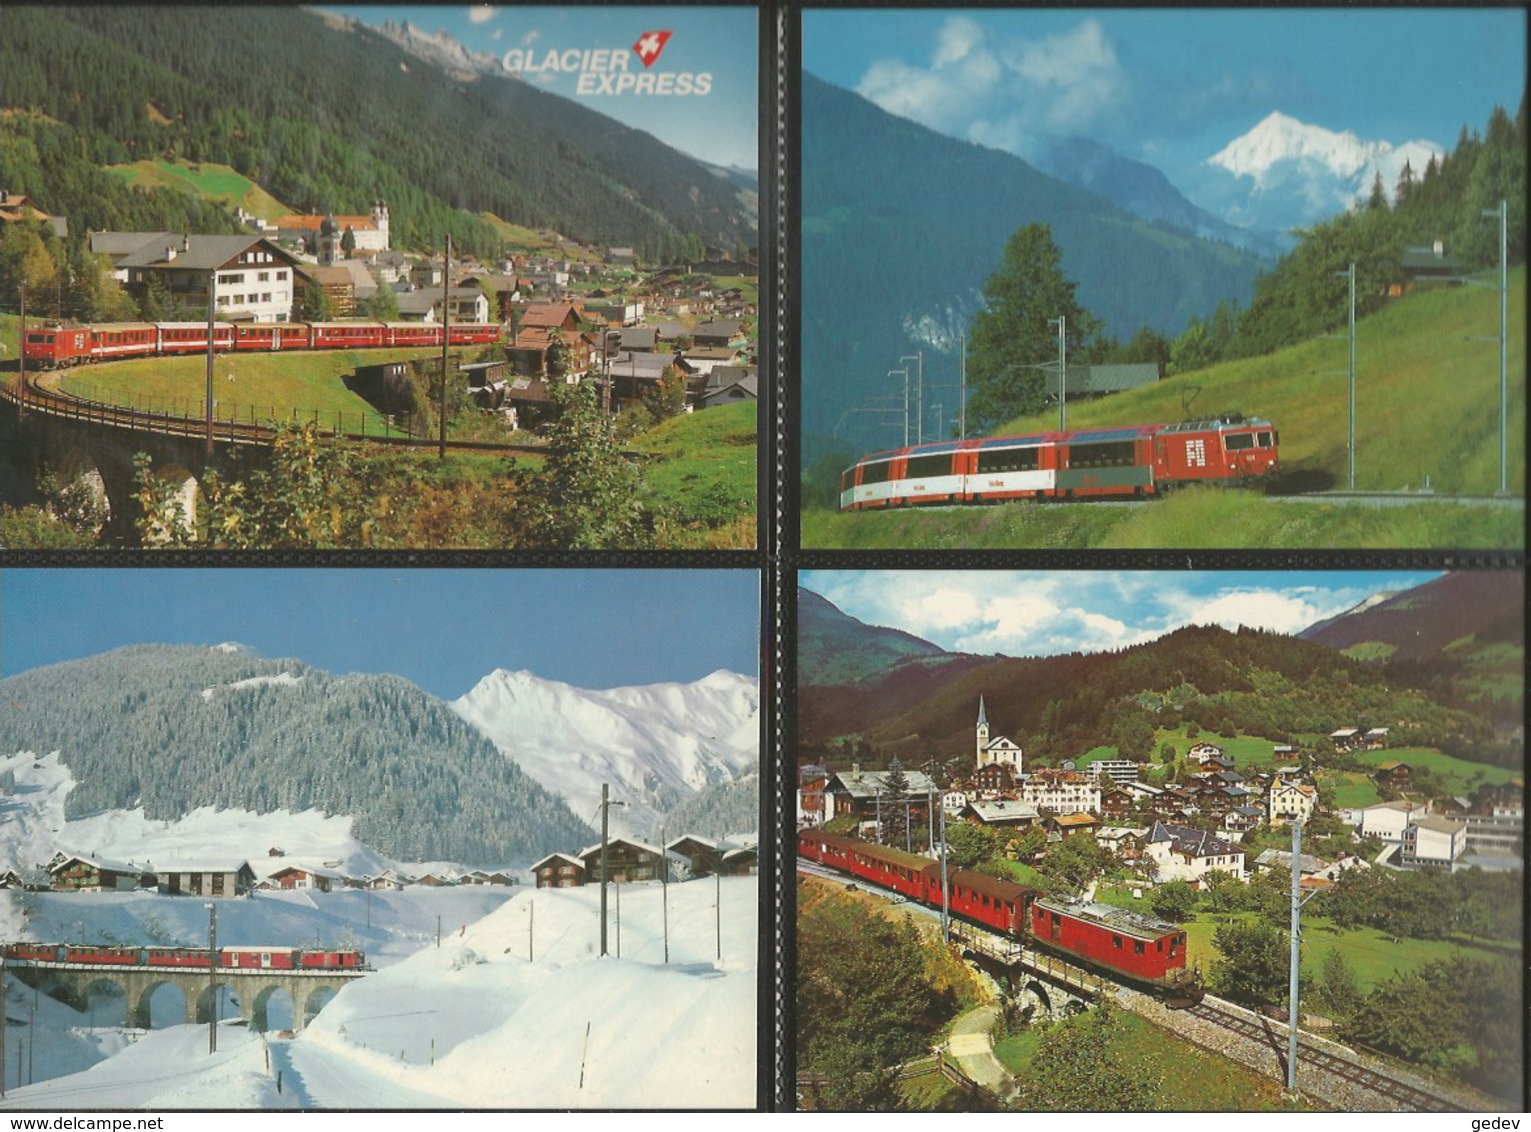 Chemin de Fer Zermatt - St Moritz, Furka-Oberalp-Bahn, Lot de 84 cartes couleurs modernes (3)